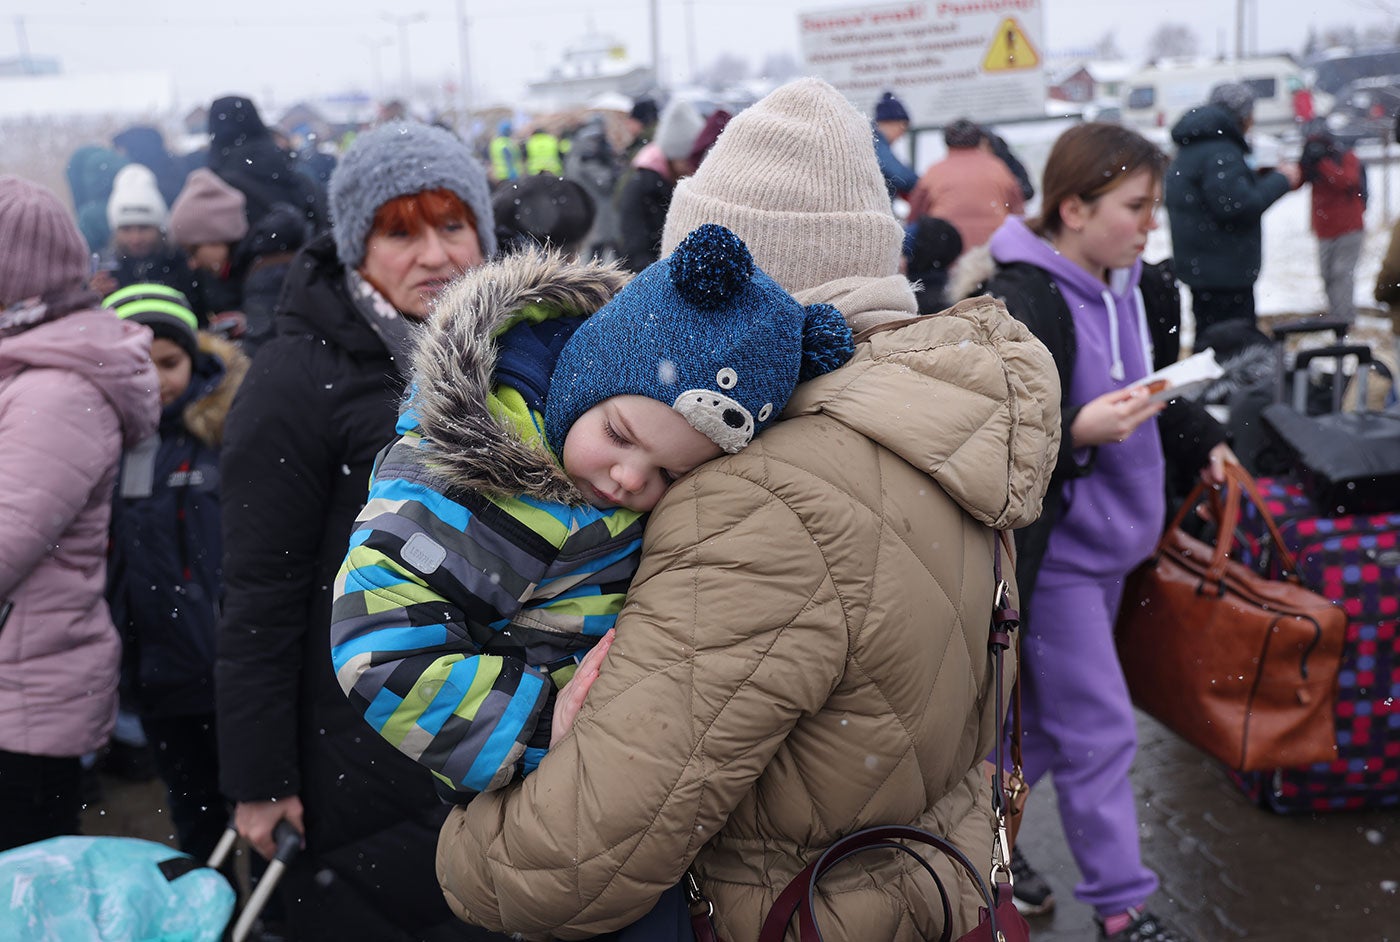 Um grande grupo de ucranianos, muitos vestindo roupas de inverno e carregando bagagens, forma um grupo. Em primeiro plano, um pai segura um filho.